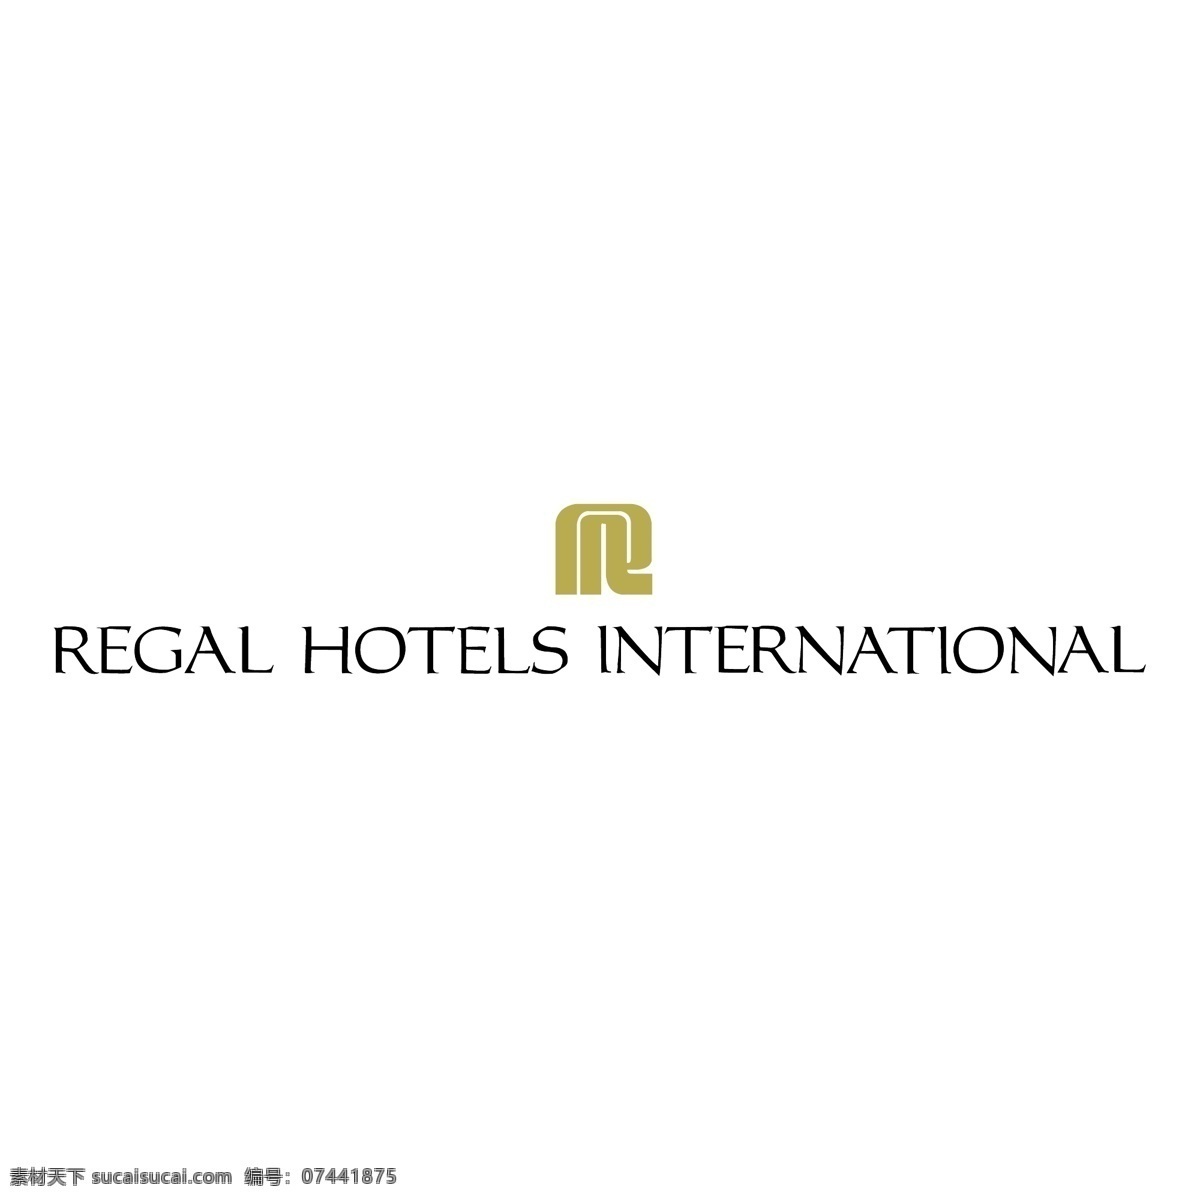 富豪酒店国际 矢量标志下载 免费矢量标识 商标 品牌标识 标识 矢量 免费 品牌 公司 白色